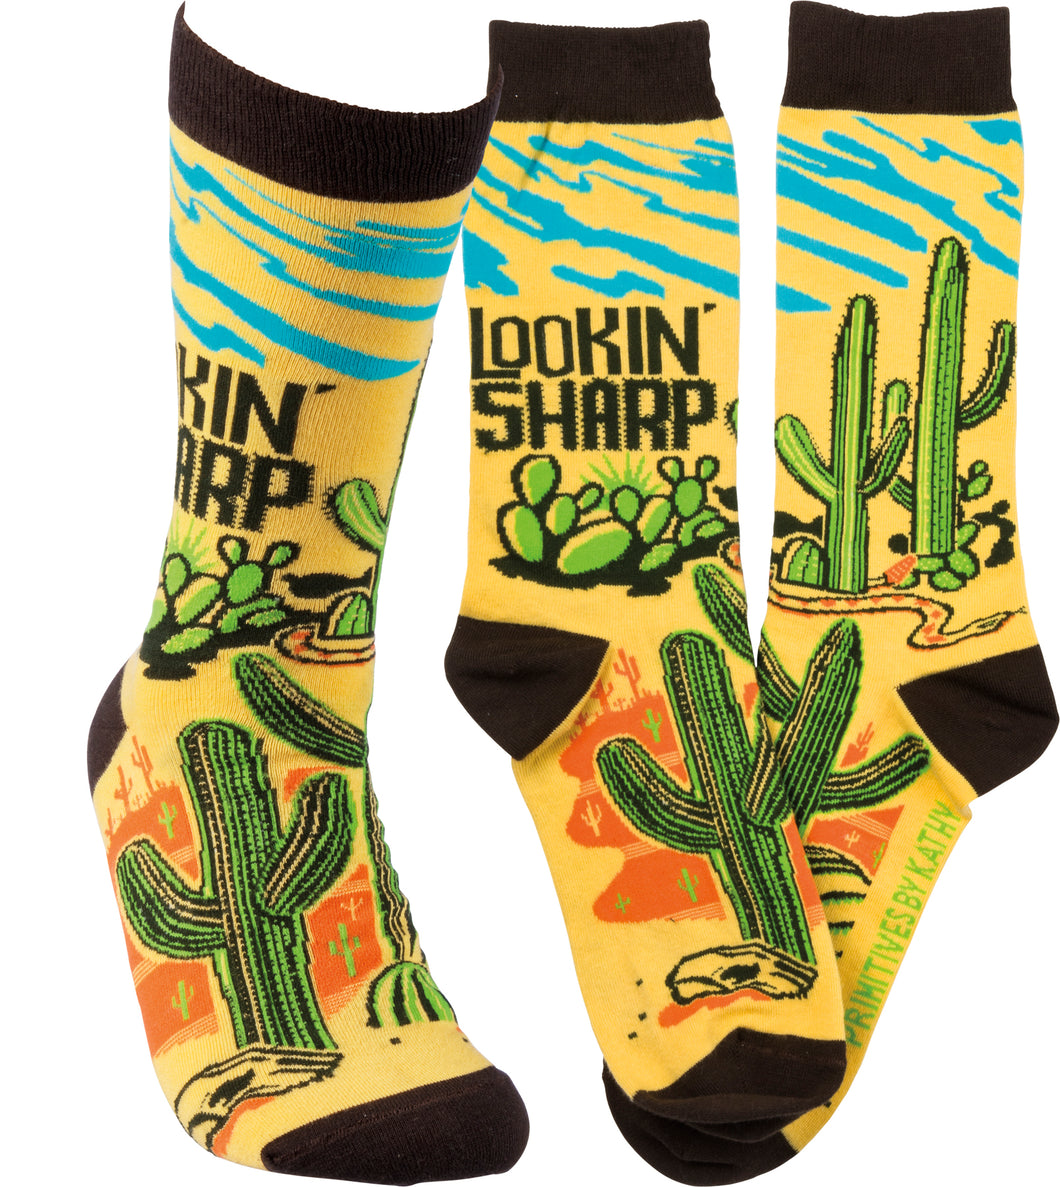 Lookin' Sharp - Crew Socks